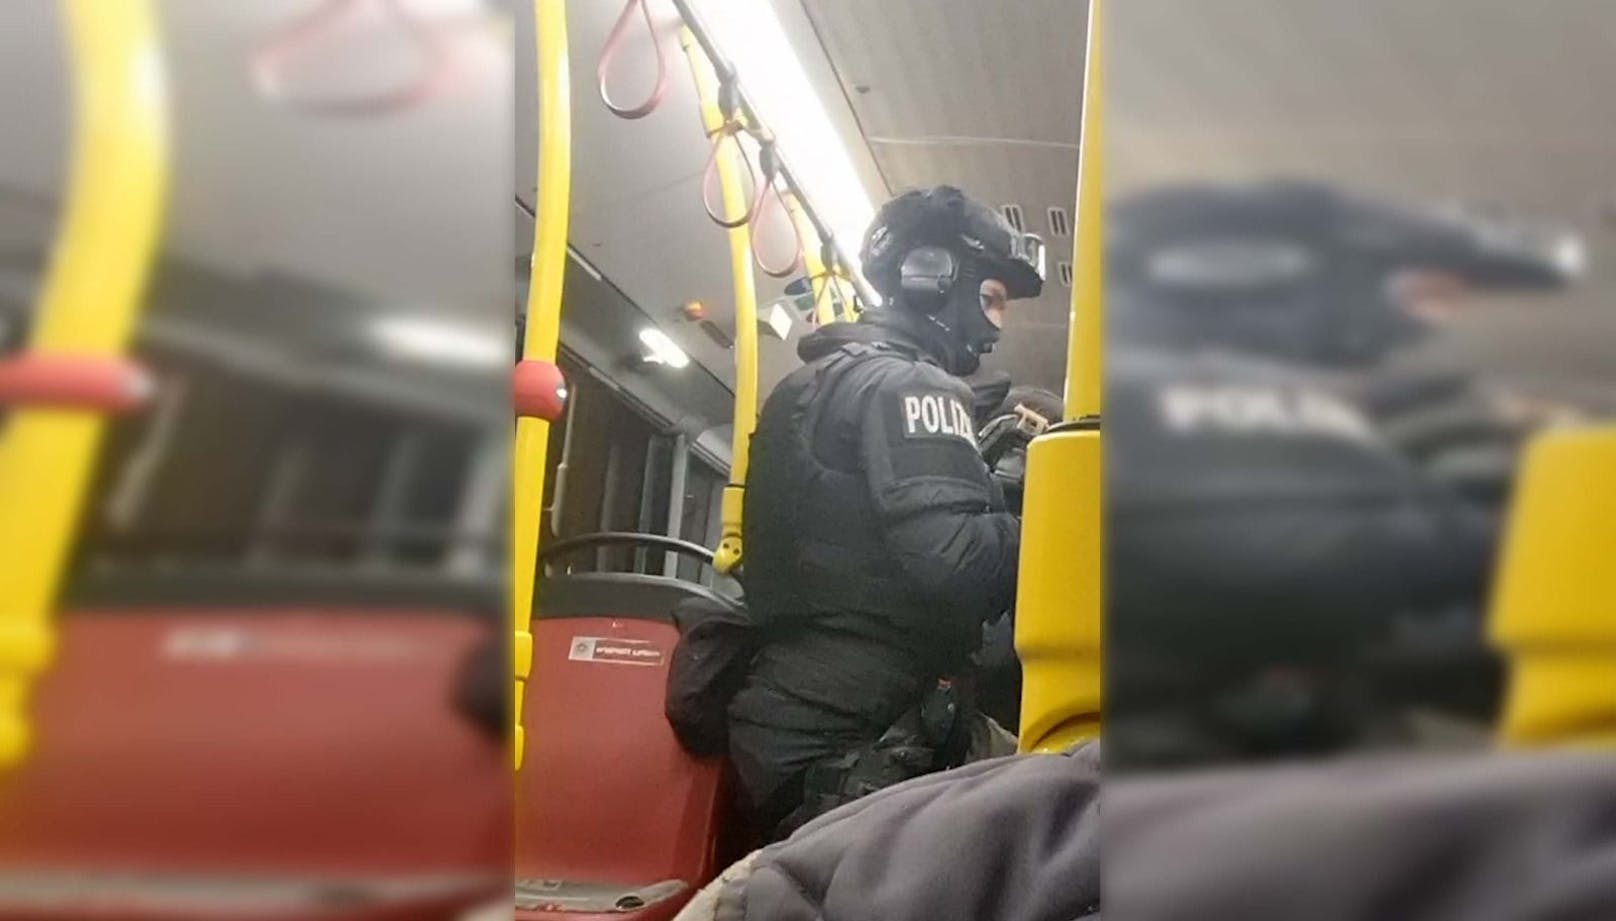 WEGA-Beamte durchsuchten nach Waffen-Raub den Bus der Wiener Linien.